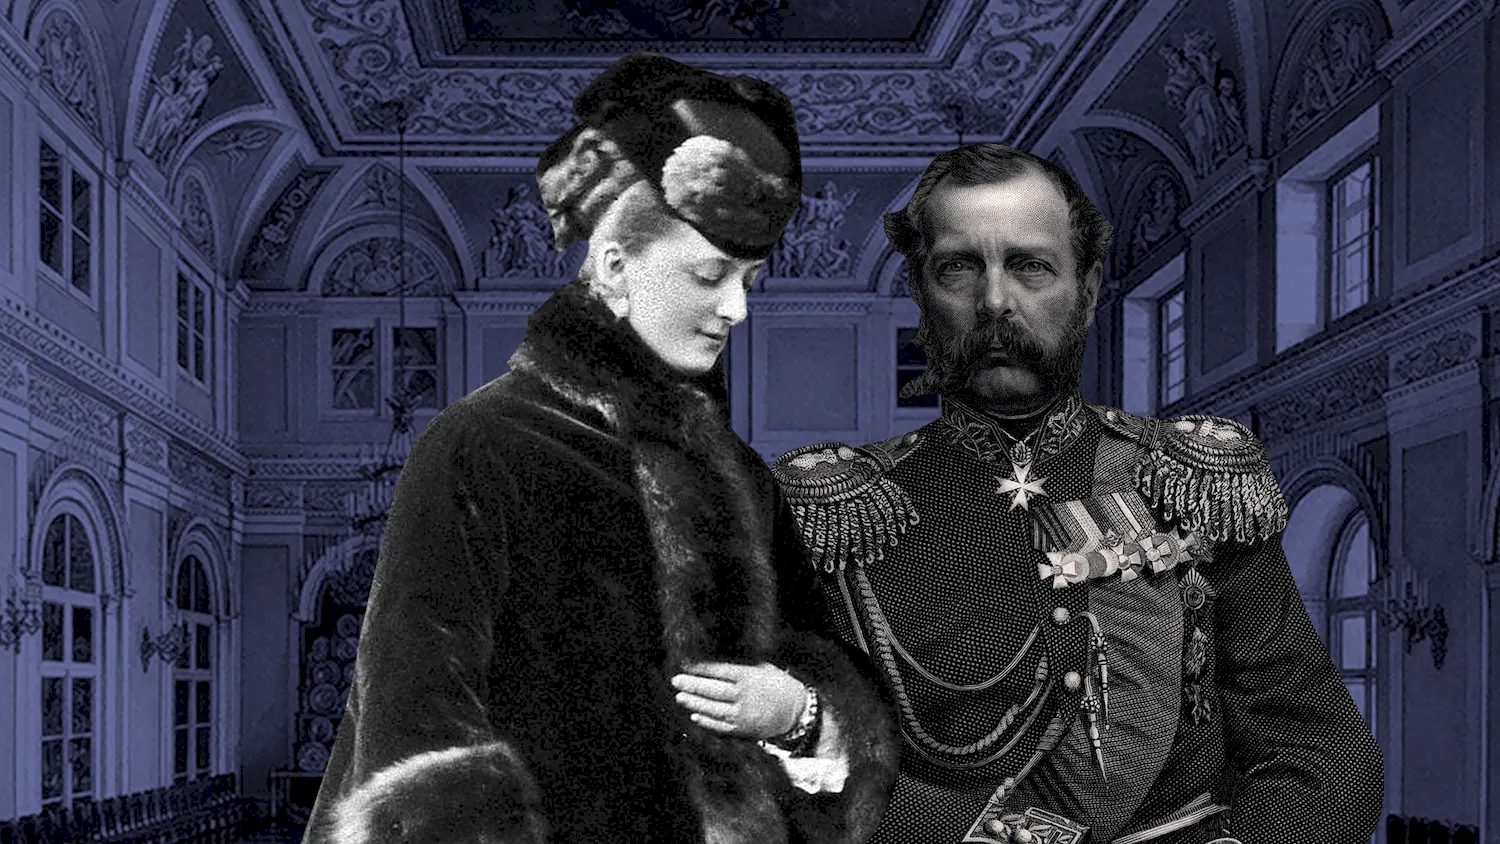 Екатерина Долгорукова и Александр 2